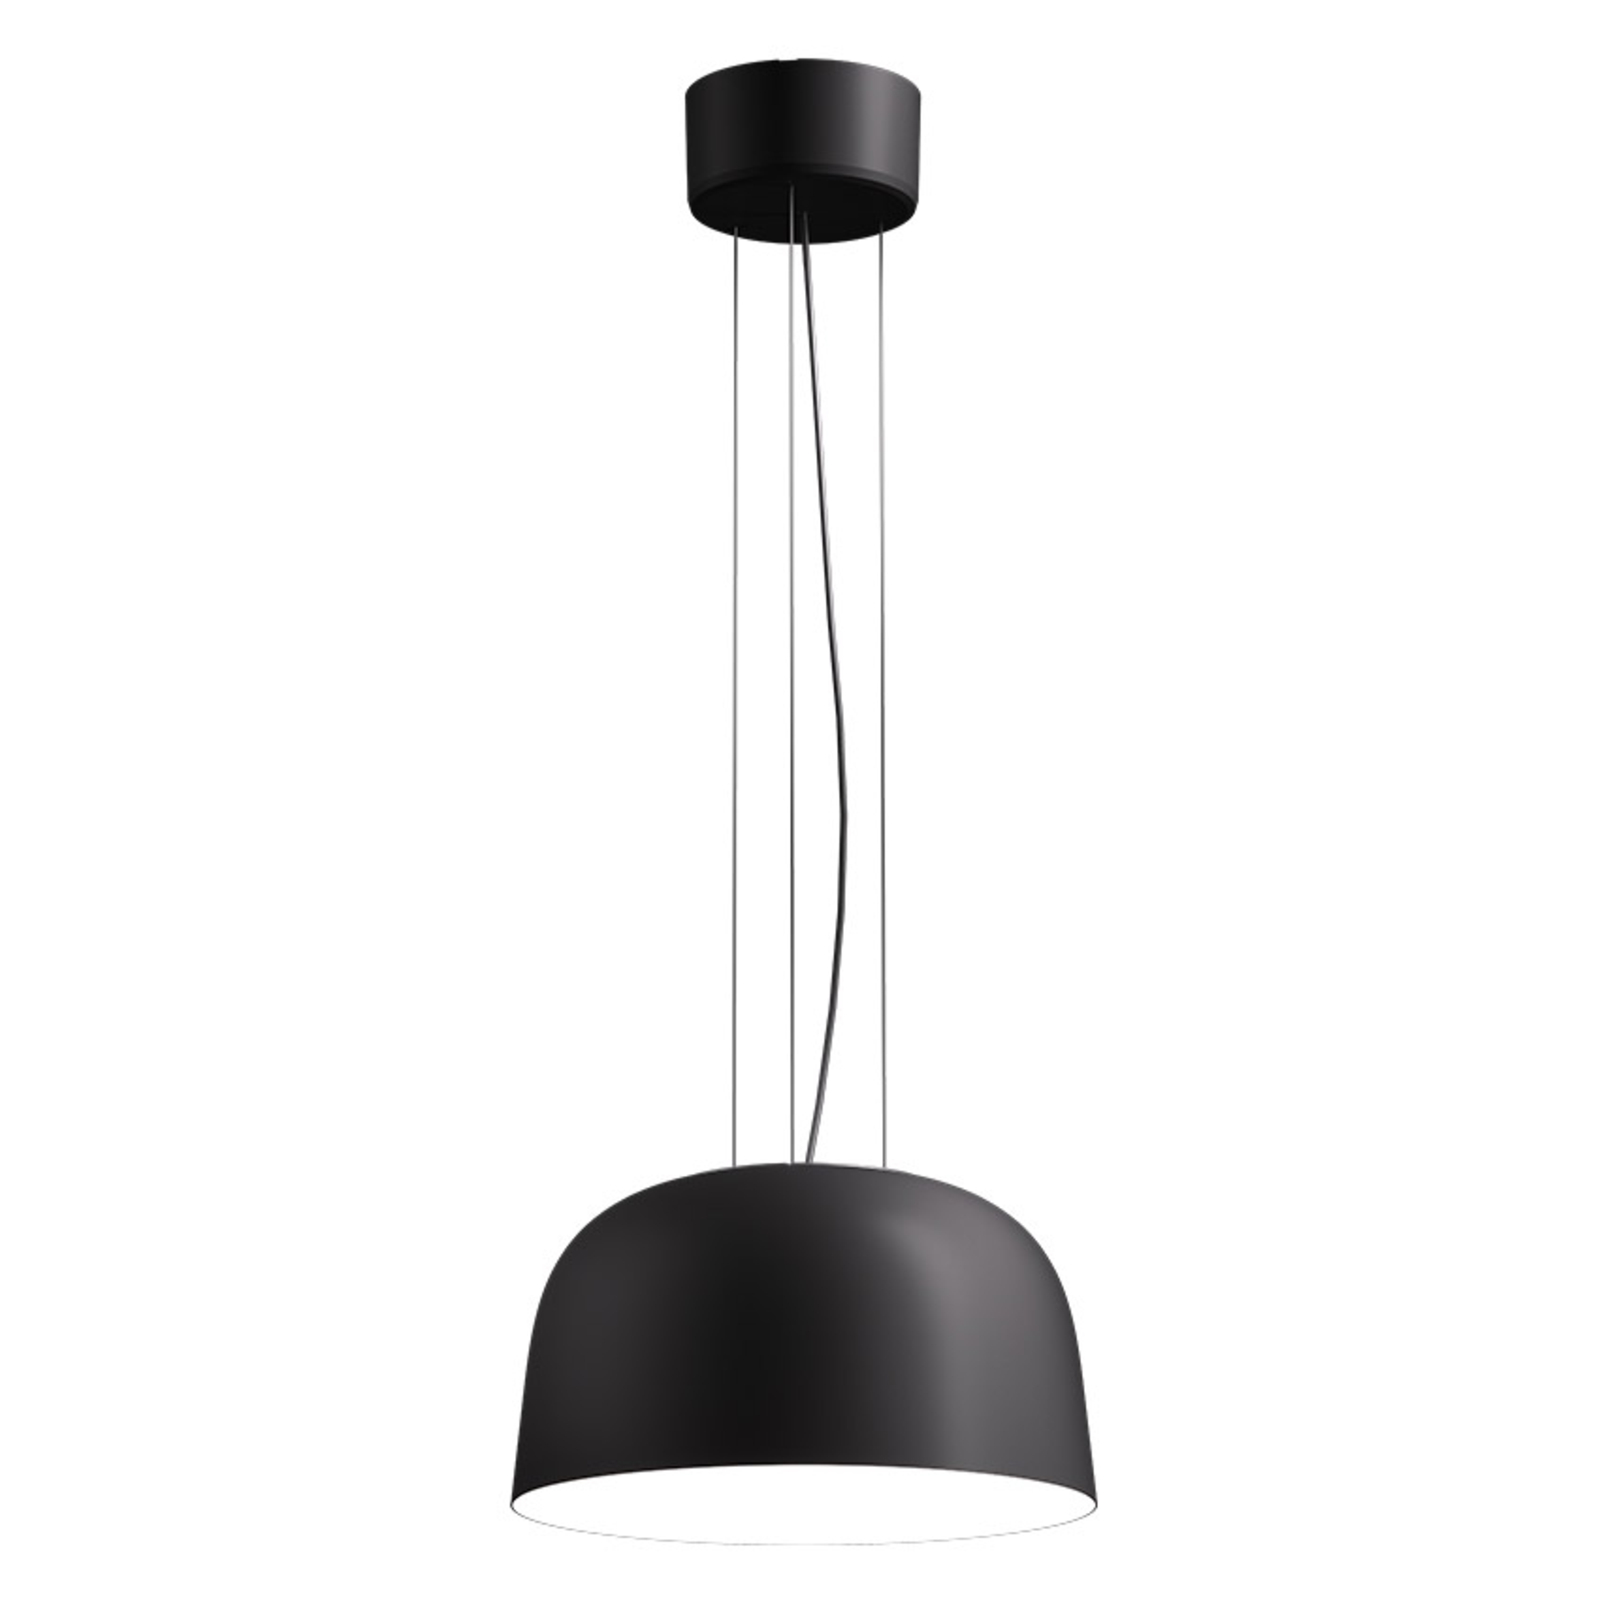 LED pakabinamas šviestuvas Sva 830 Dali Ø 35,6cm juodas